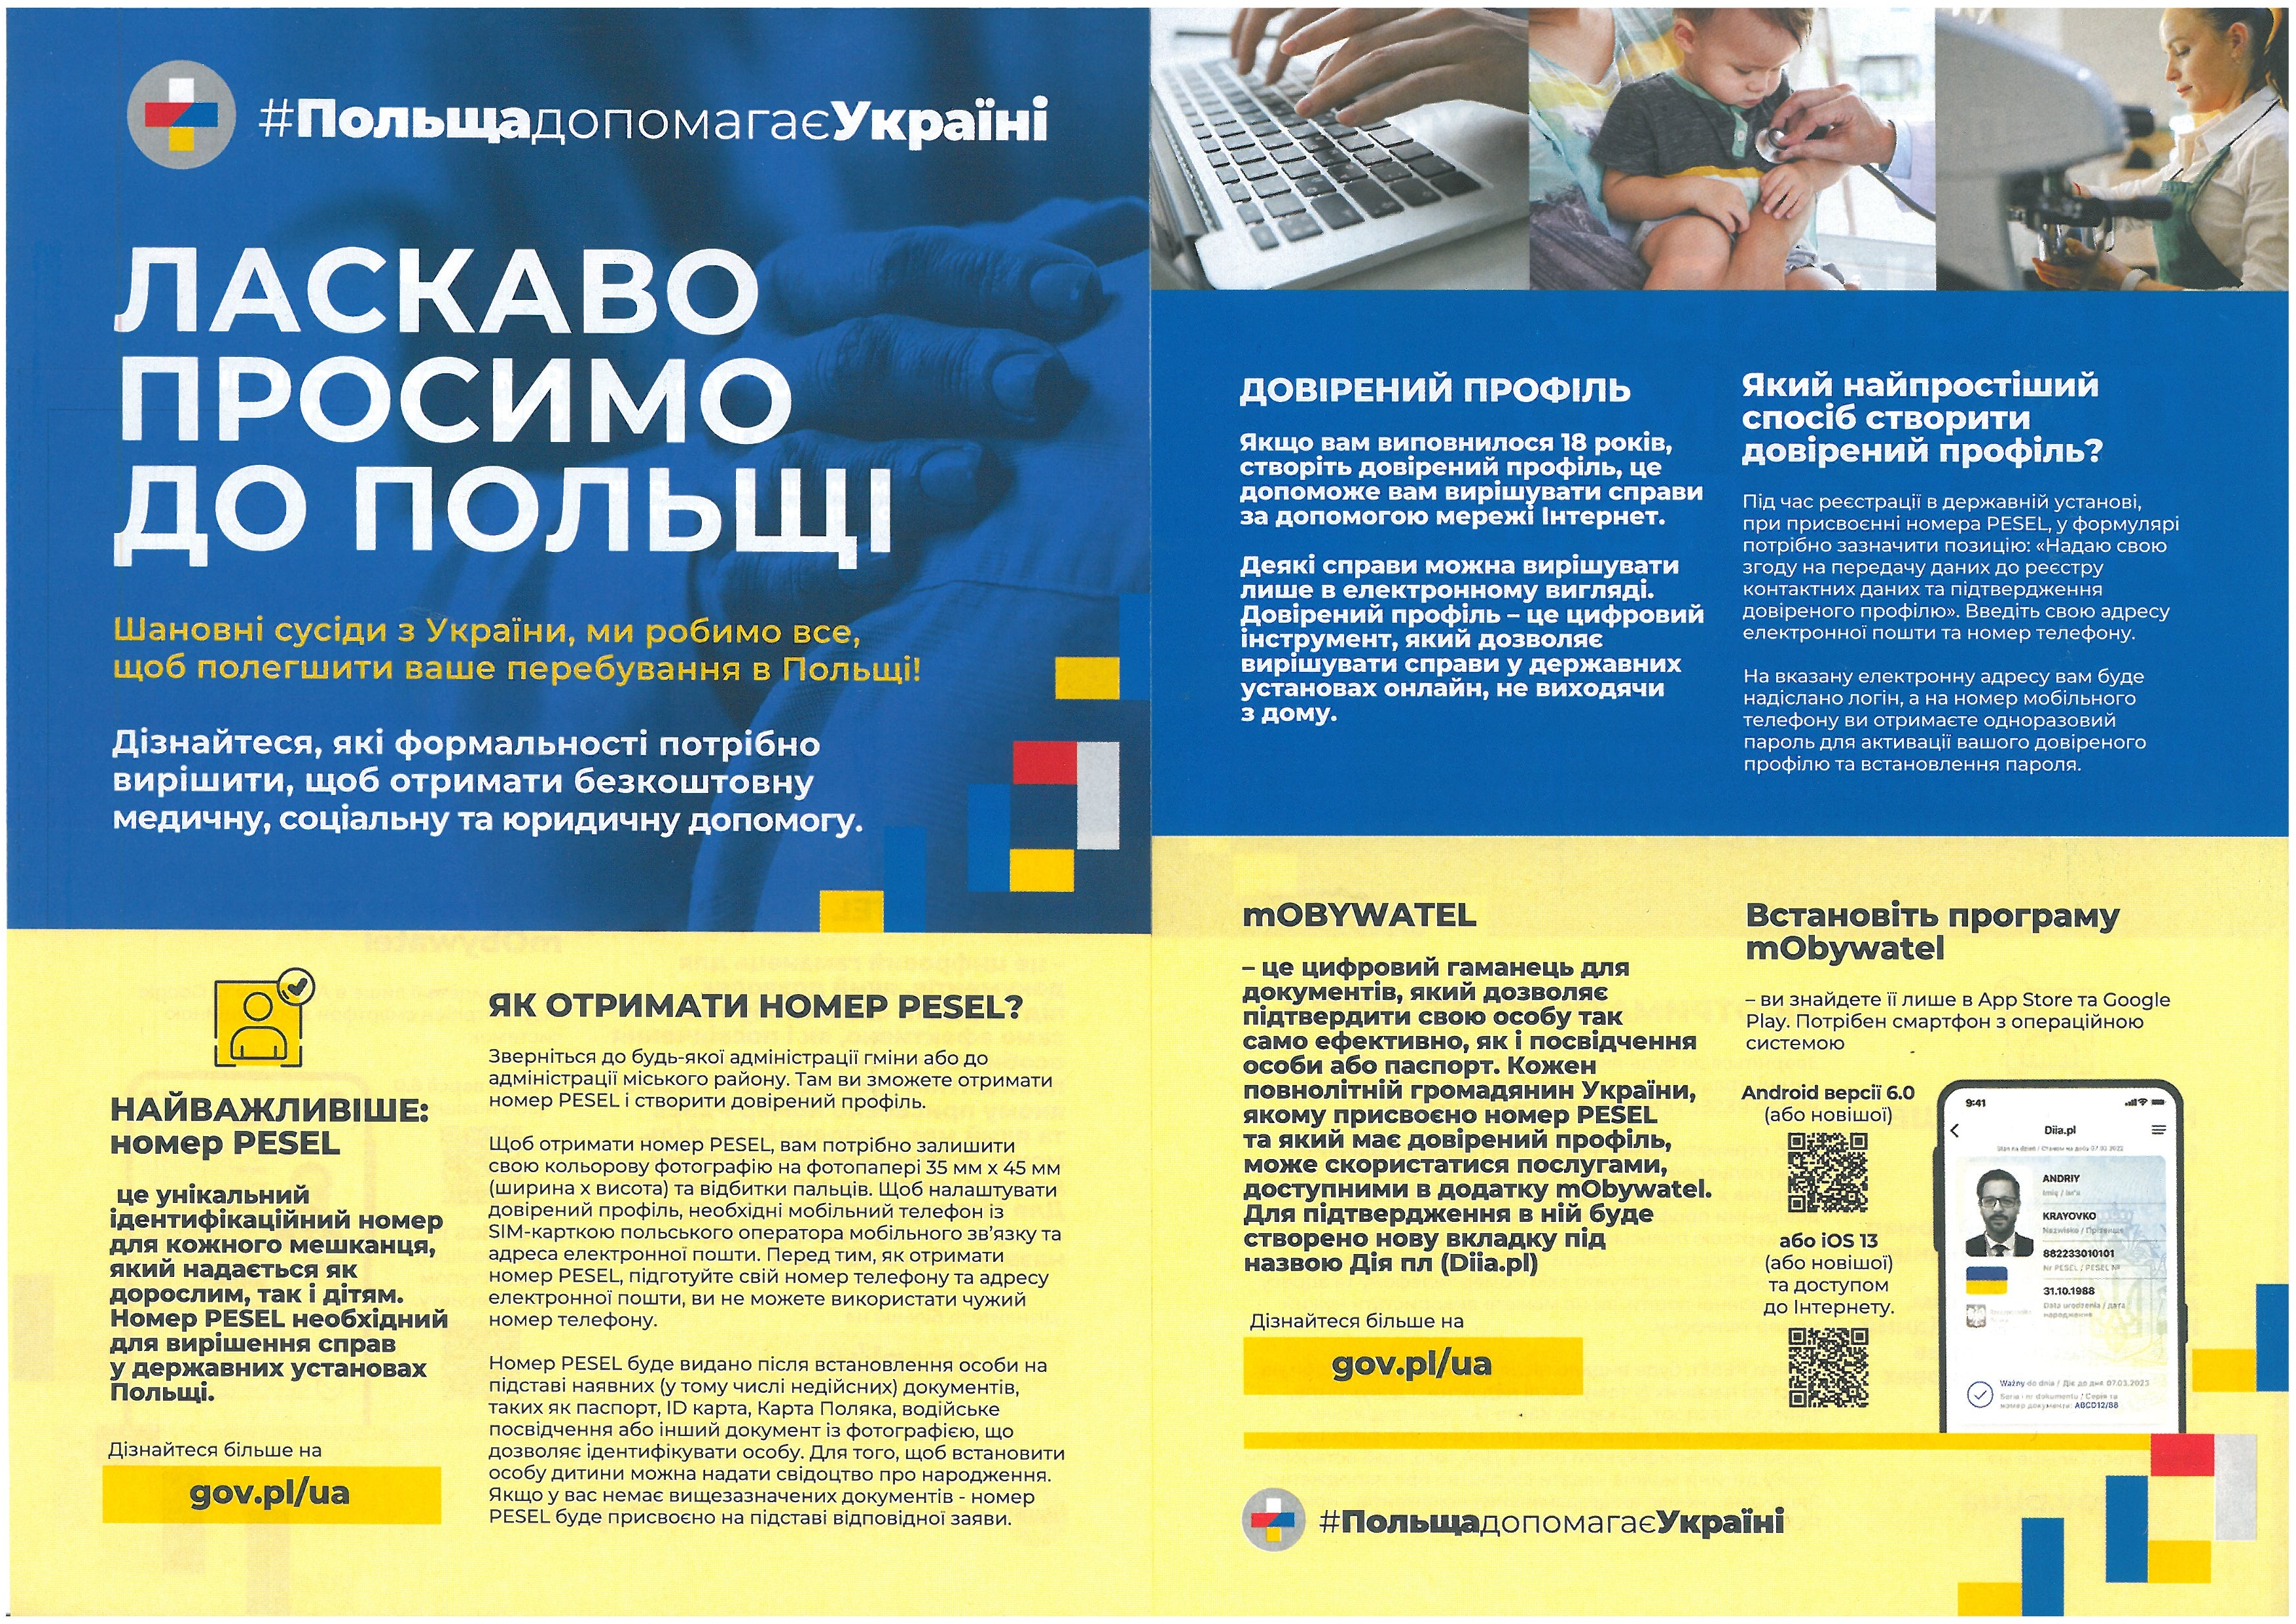 Informacja dla obywateli Ukrainy dot. nadania numeru pesel i aplikacji mobywatel.pl